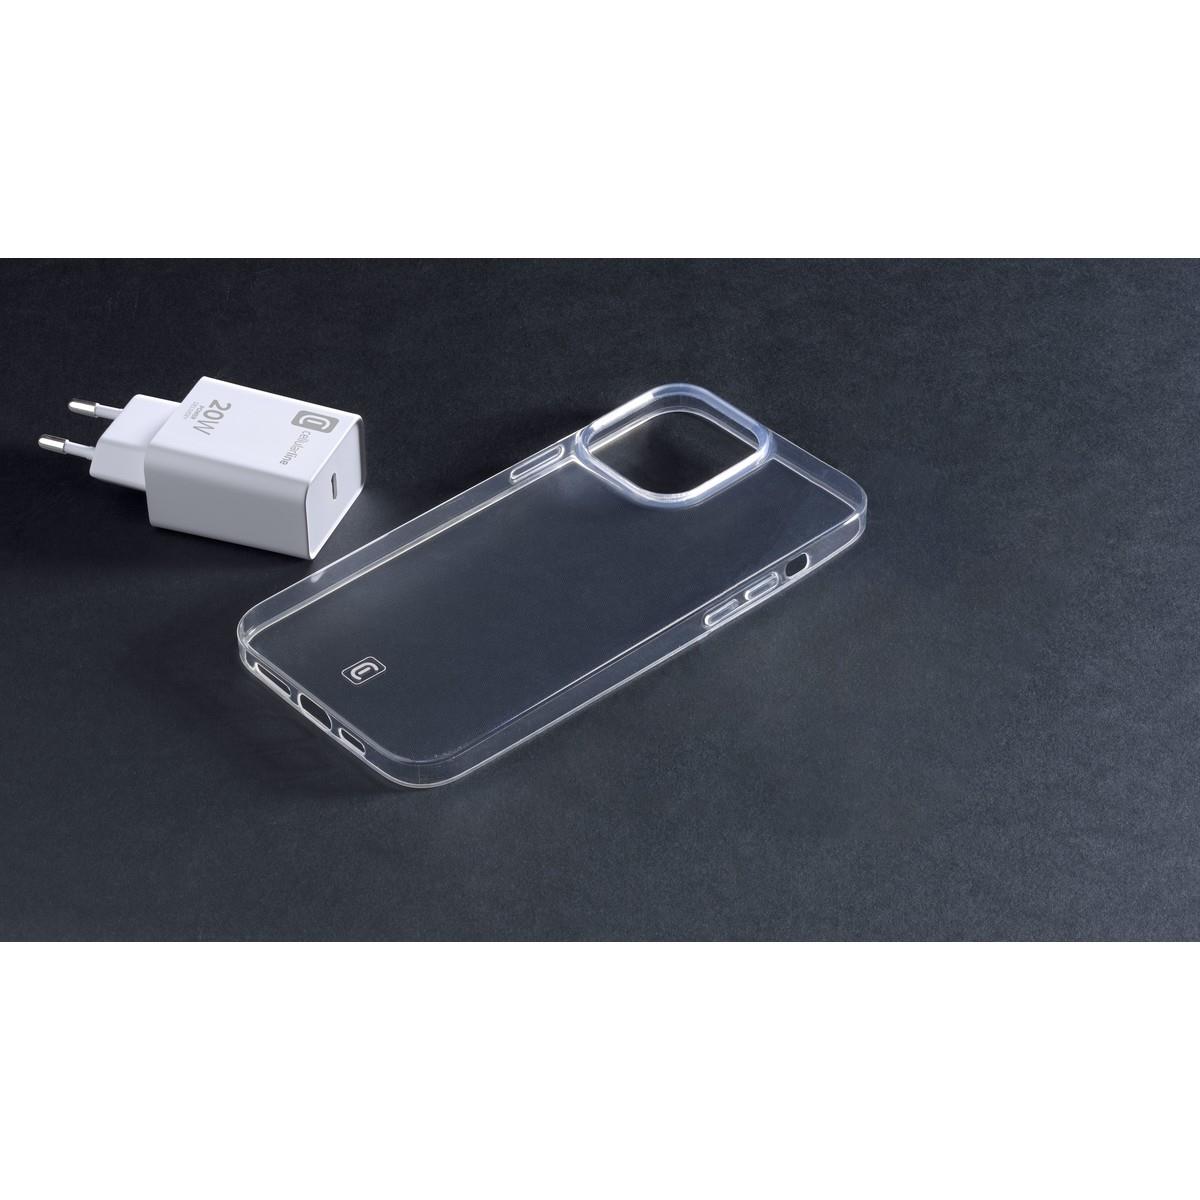 Set STARTER Kit aus Backcover und Reiselader USB Type-C 20W für Apple iPhone 13